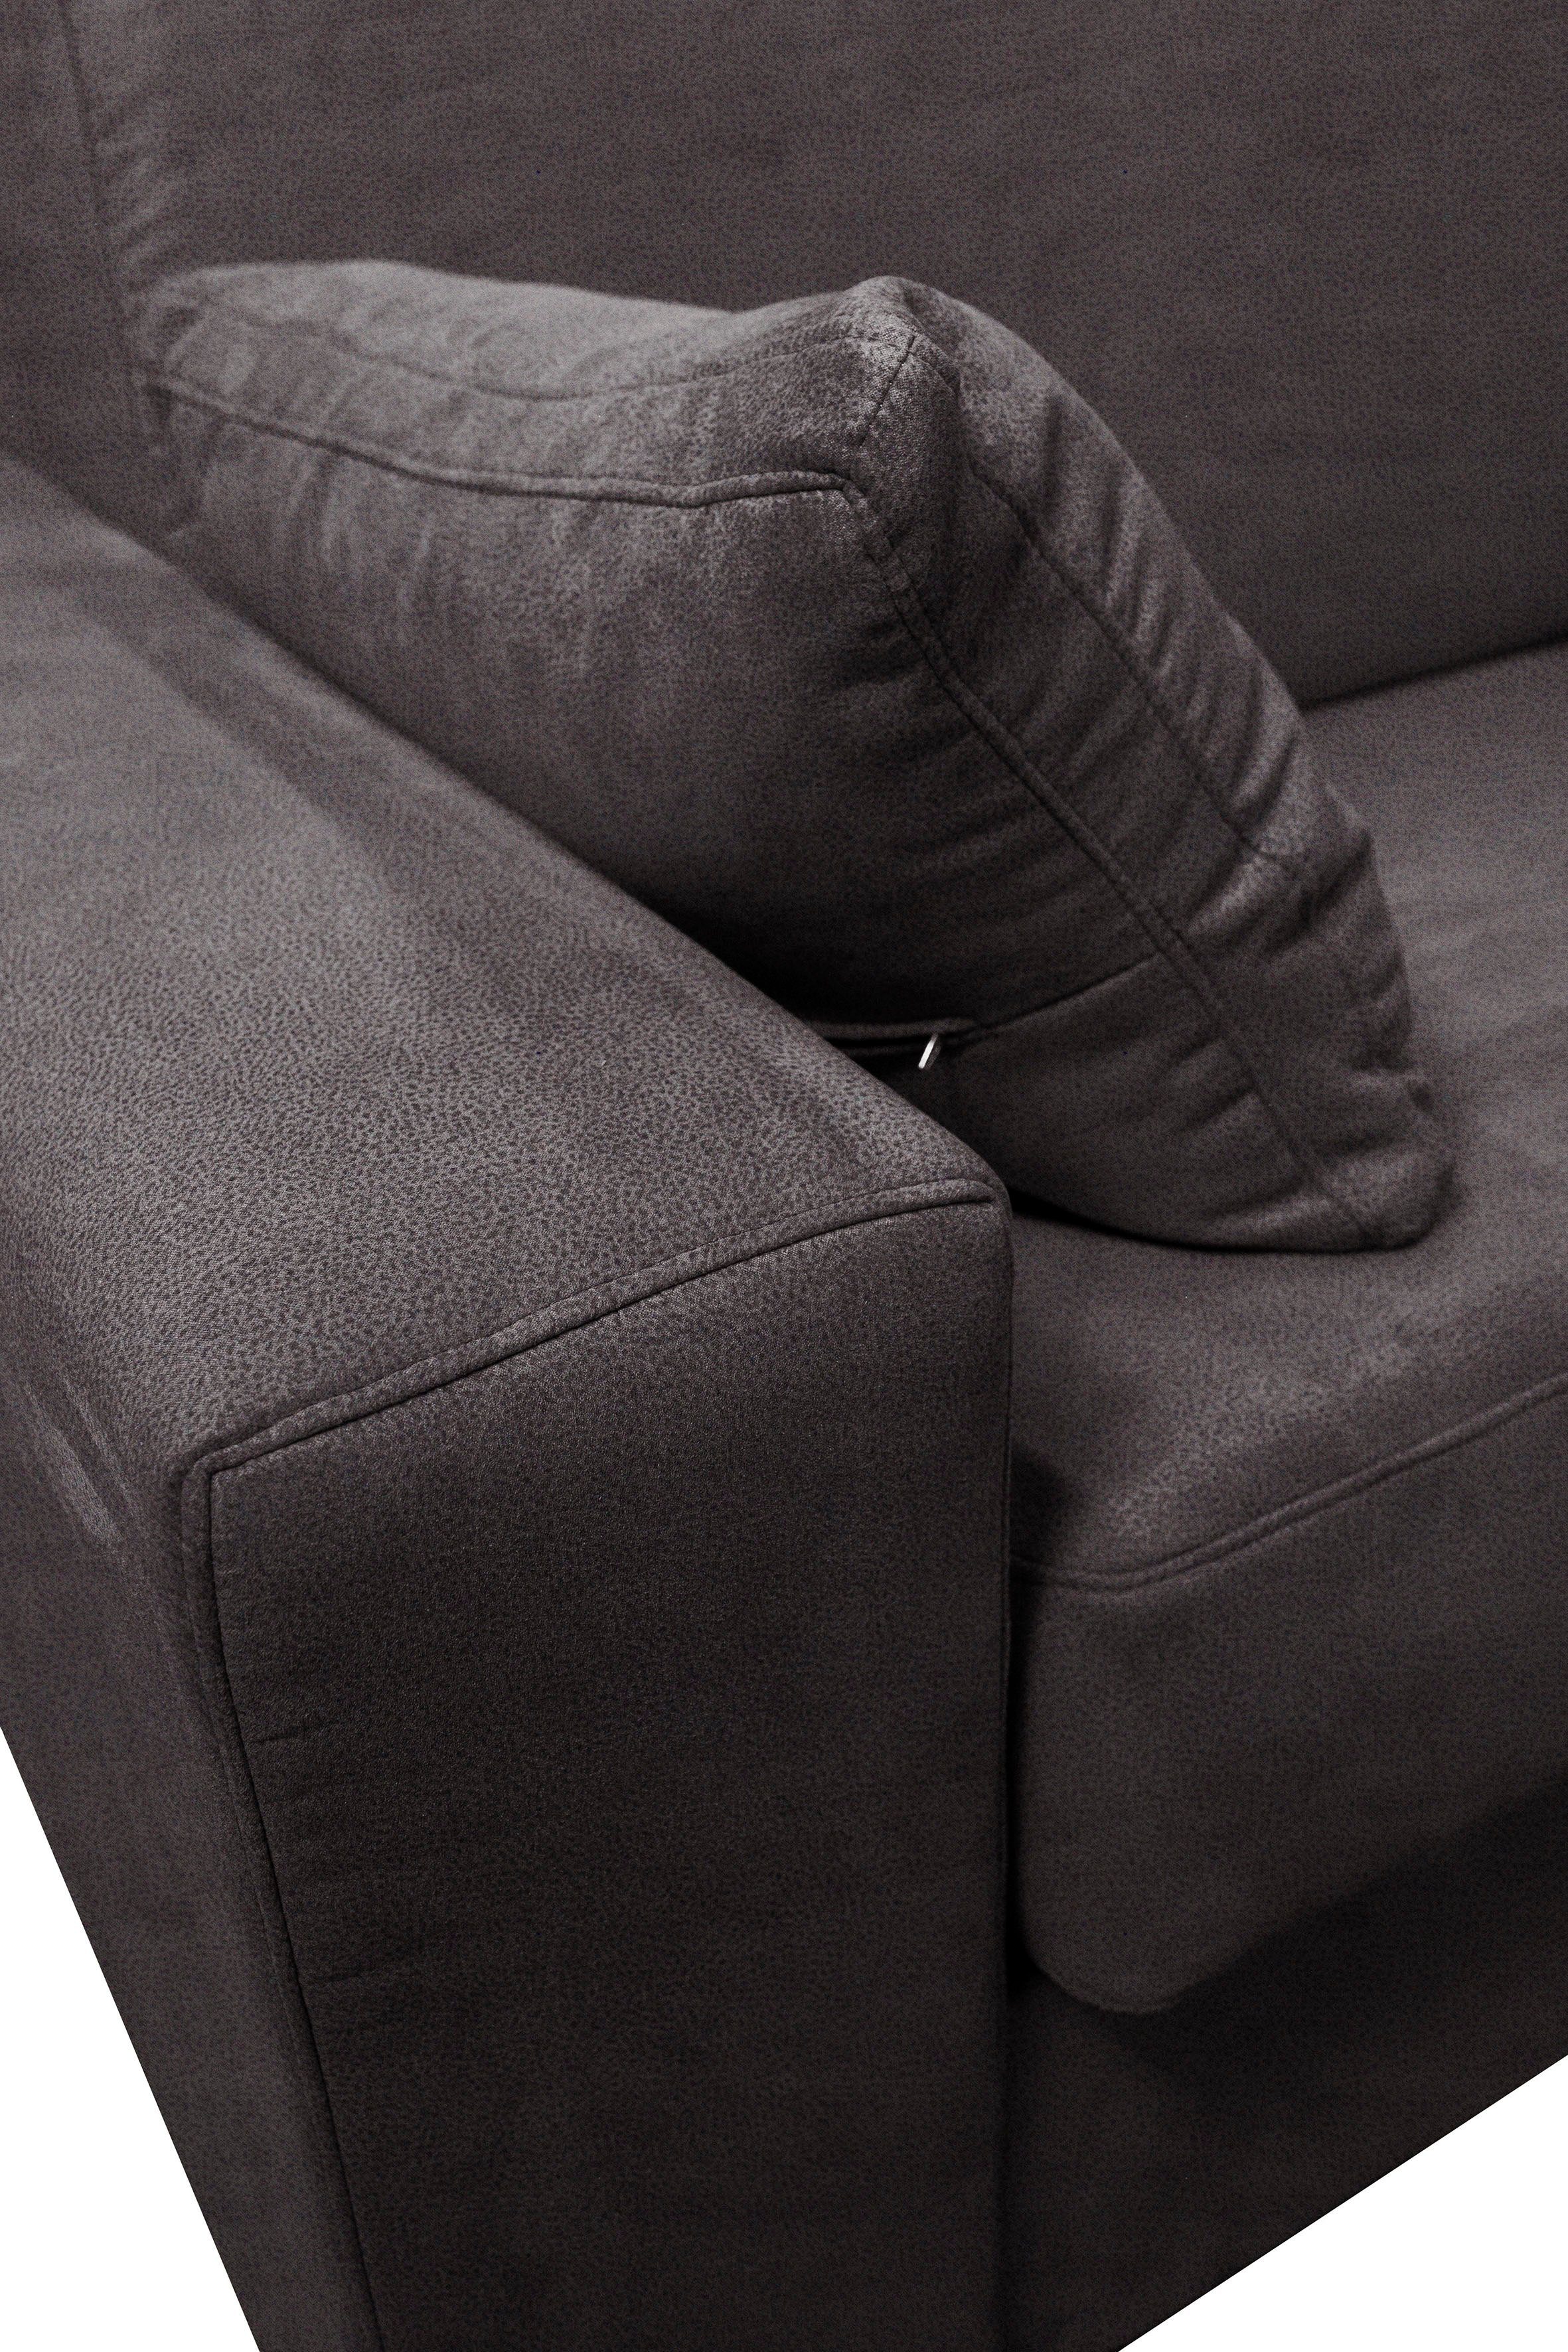 Home affaire Sessel Roma, Dauerschlaffunktion, Unterfederung, ca 83x198 cm mit Liegemaße